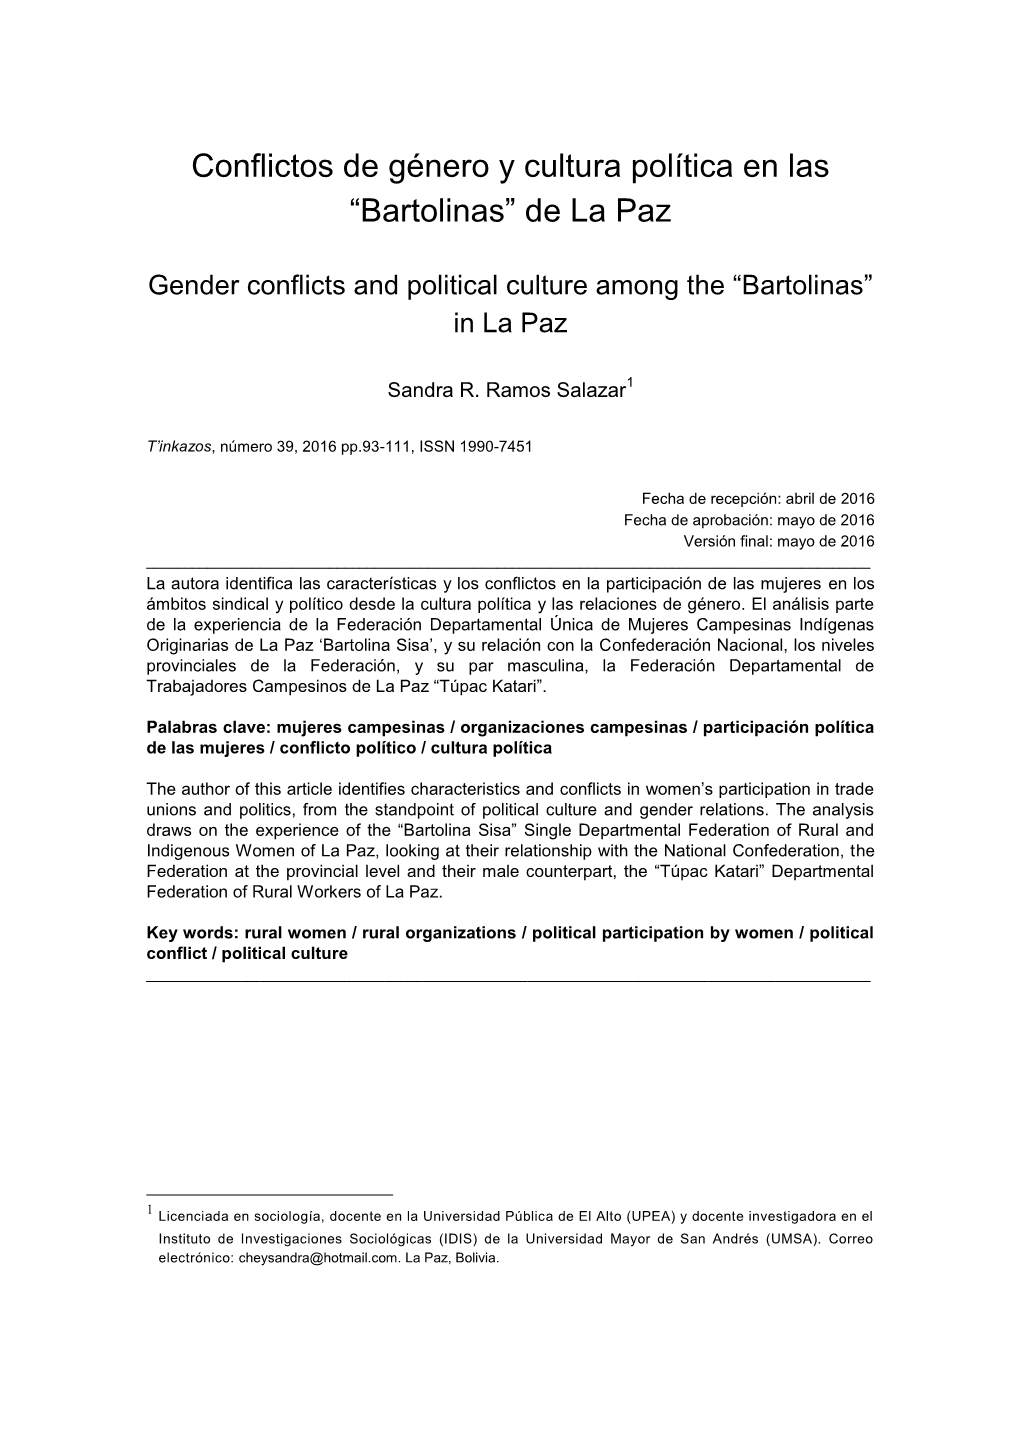 Conflictos De Género Y Cultura Política En Las “Bartolinas” De La Paz